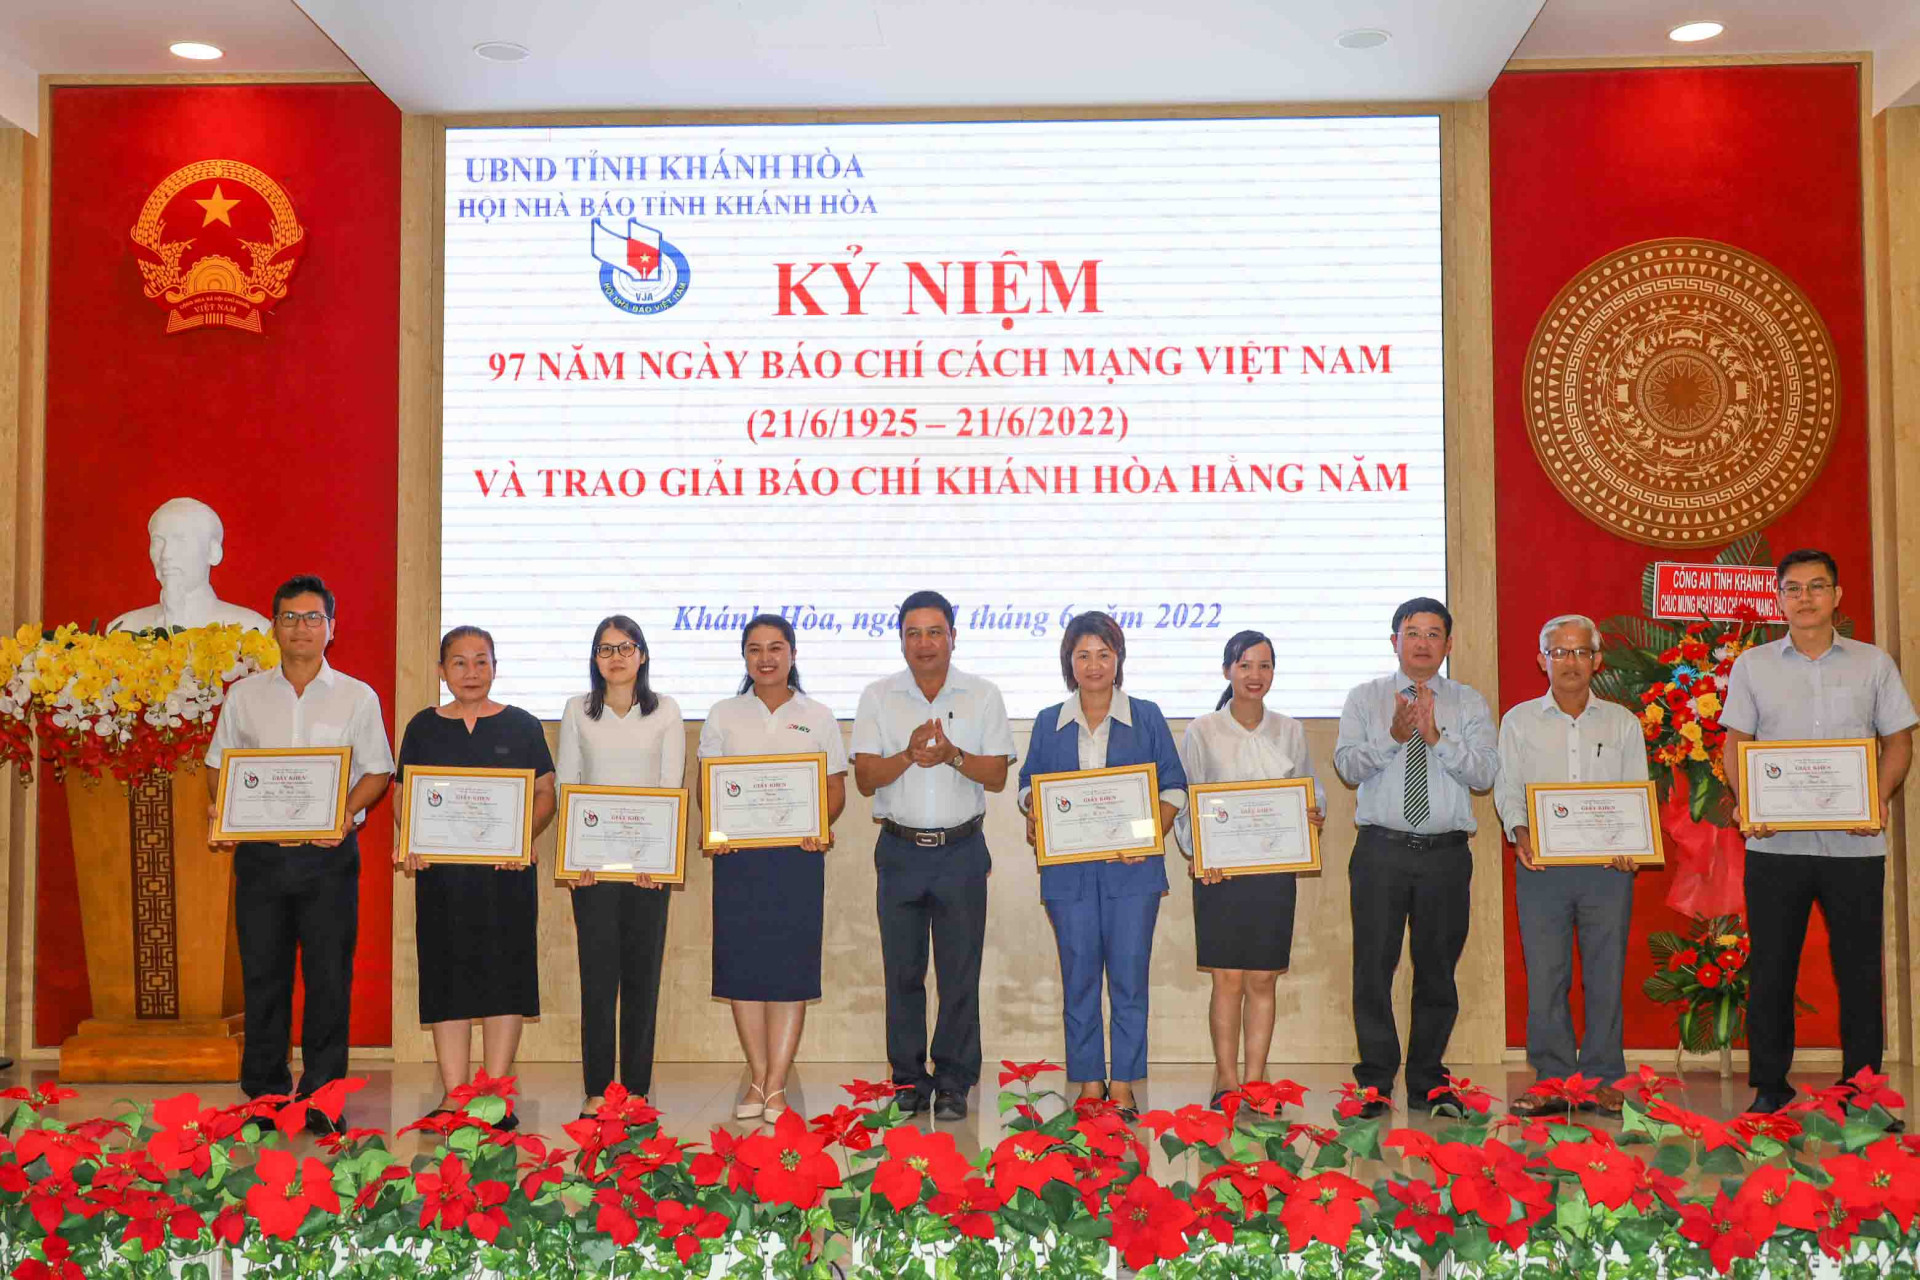 Lãnh đạo Hội Nhà báo tỉnh Khánh Hòa khen thưởng các hội viên có nhiều hoạt động tích cực vào nhiệm vụ, công tác hội. 